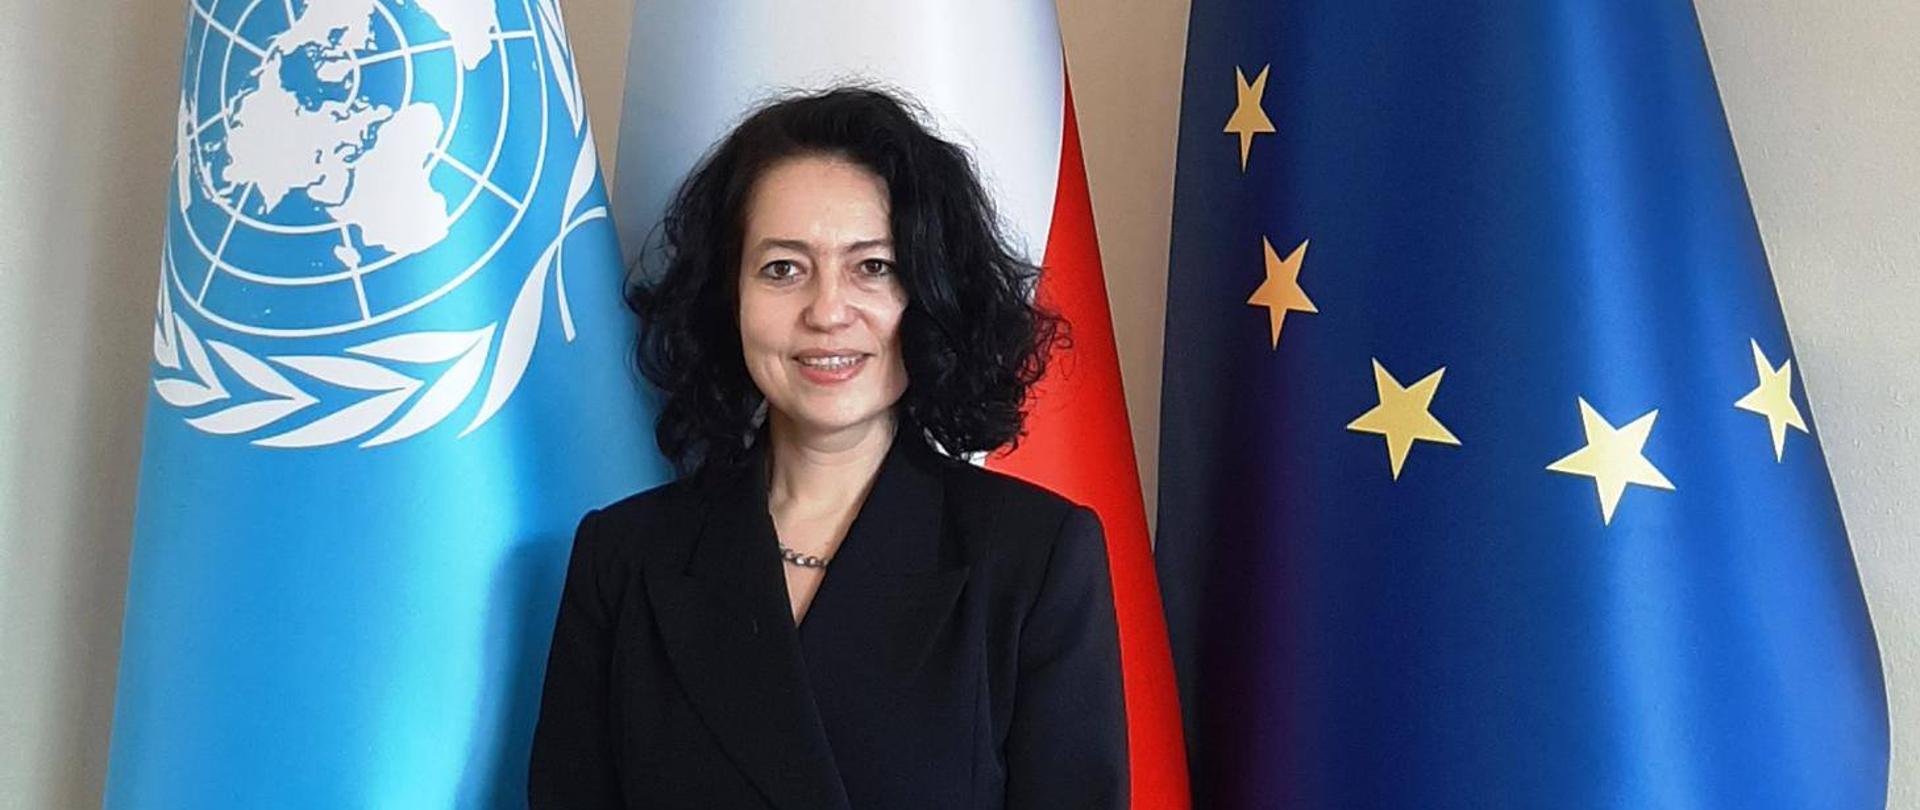 Ambasador Dominika Krois, Stała Przedstawiciel RP przy Biurze Narodów Zjednoczonych Wiedniu